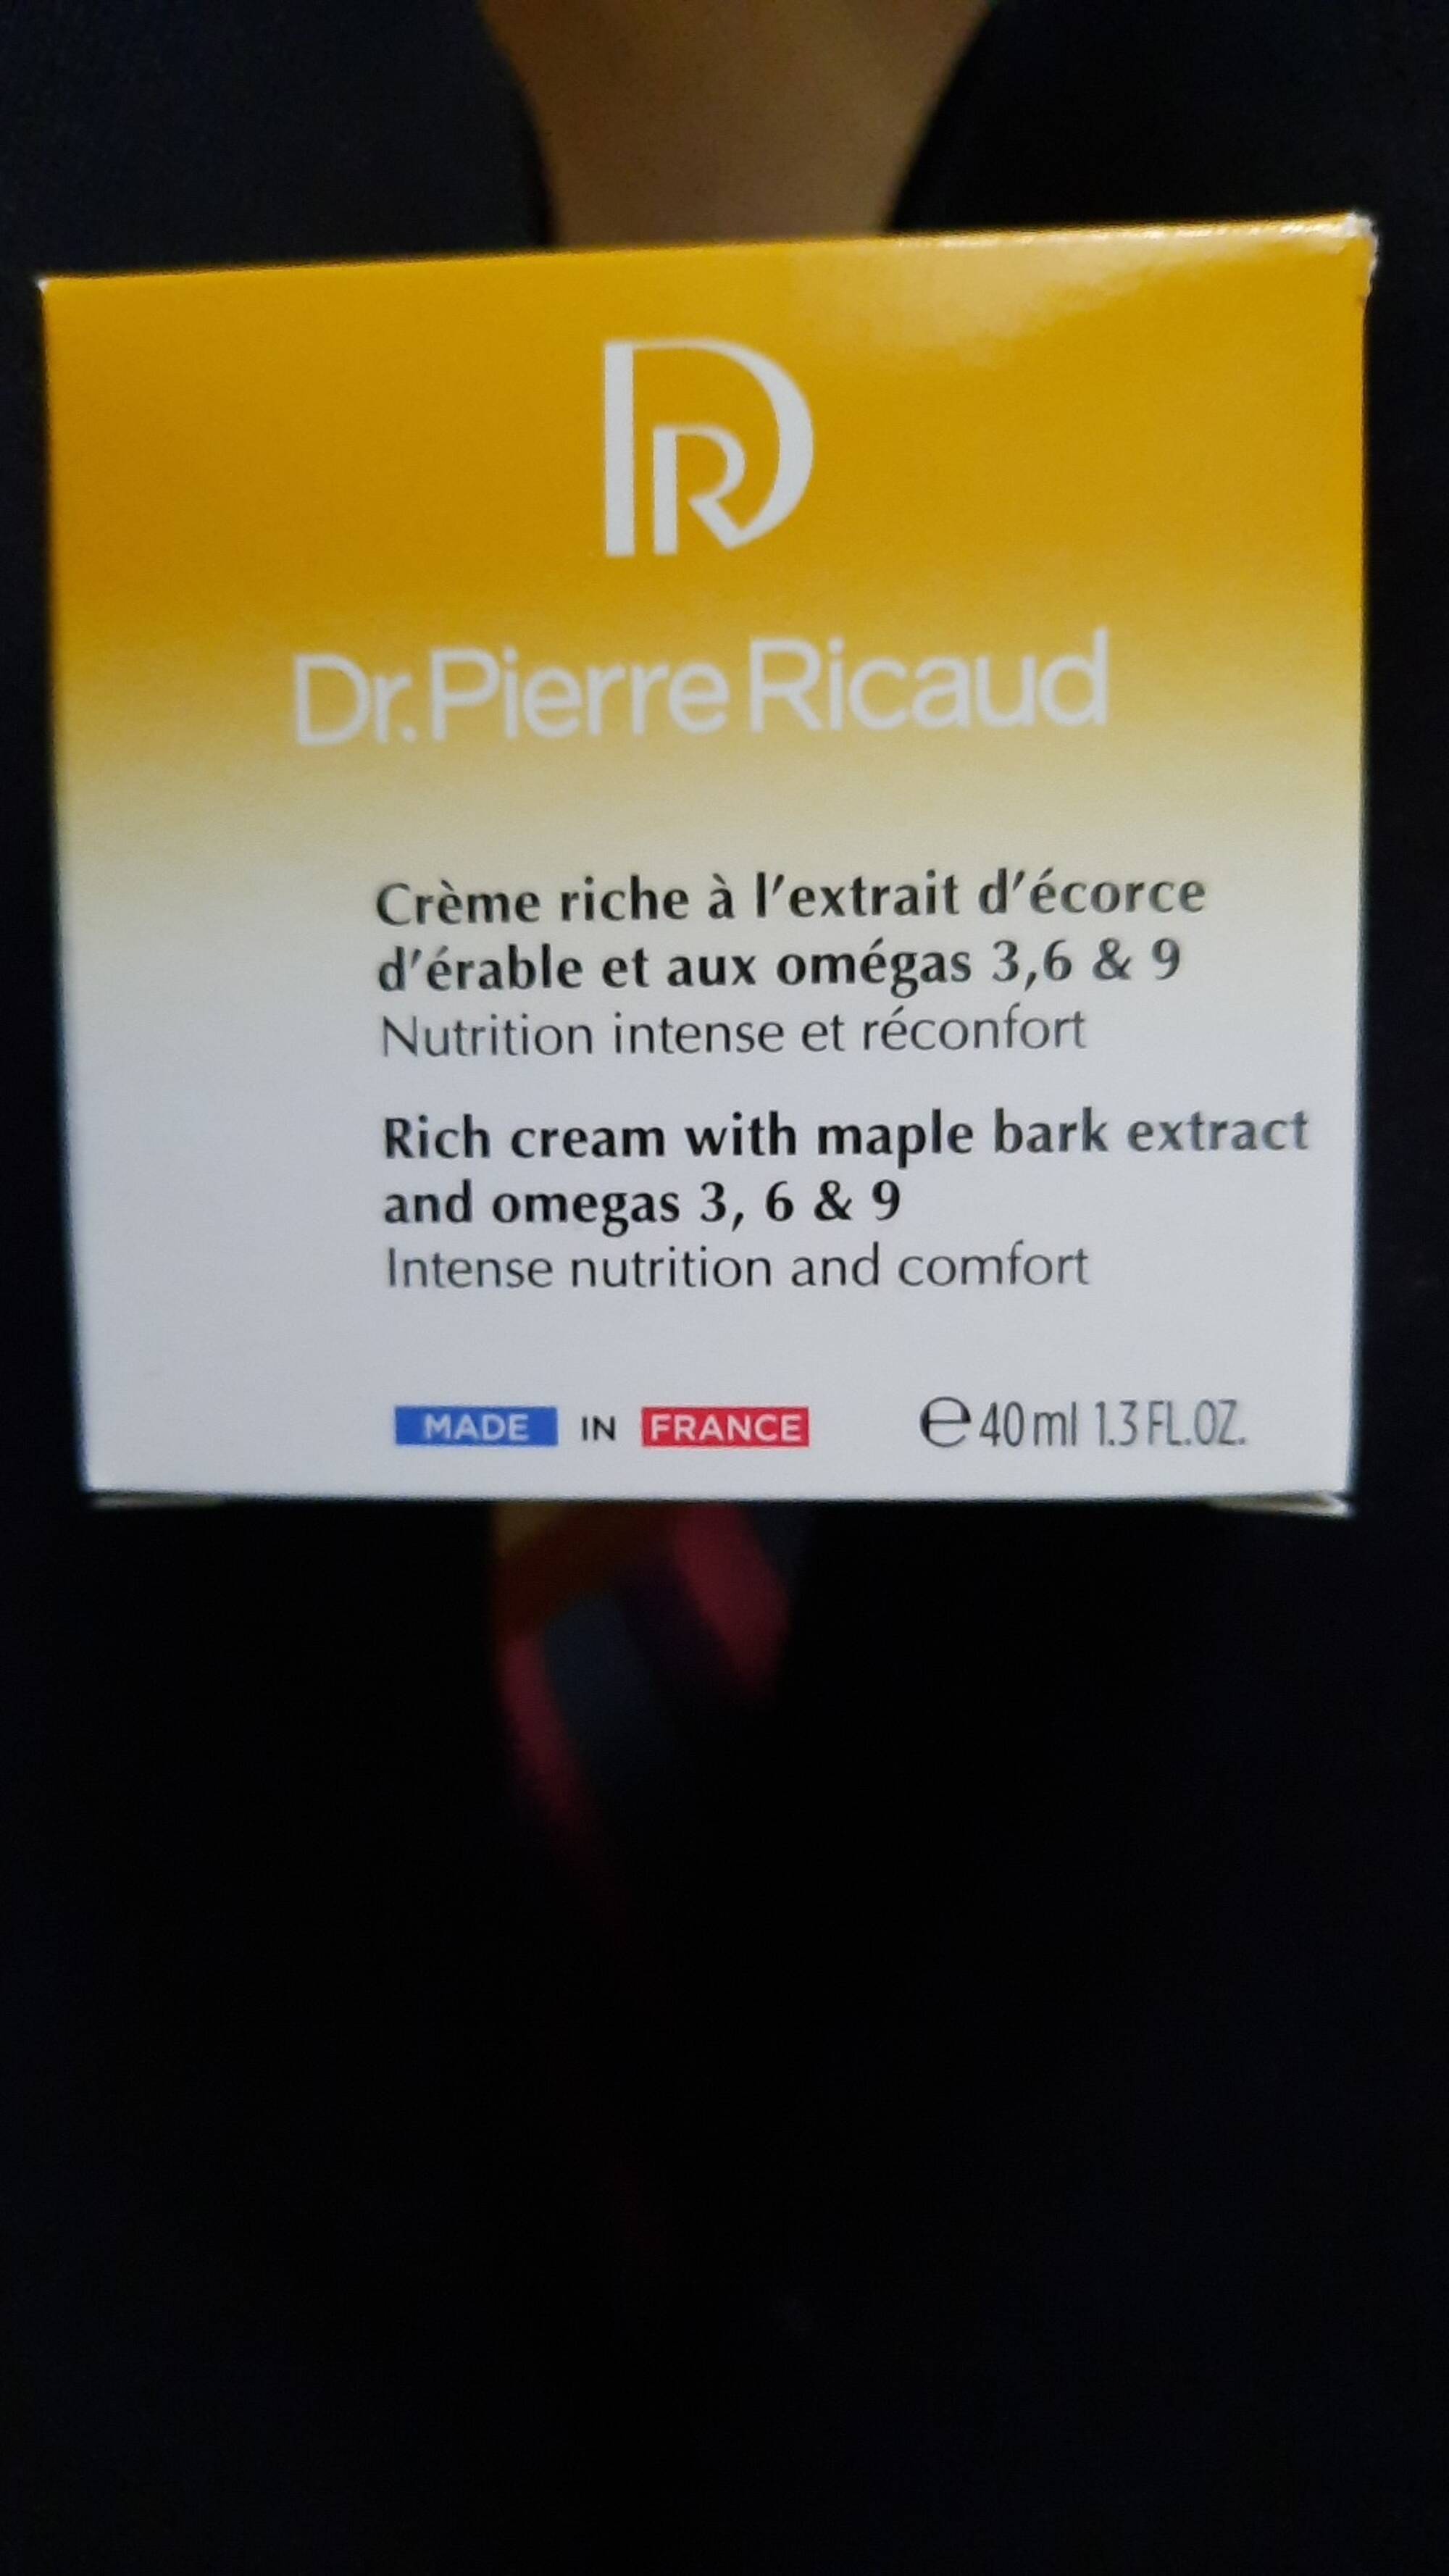 DR PIERRE RICAUD - Crème riche à l'extrait d'écorce d'érable et aux omégas 3,6 & 9